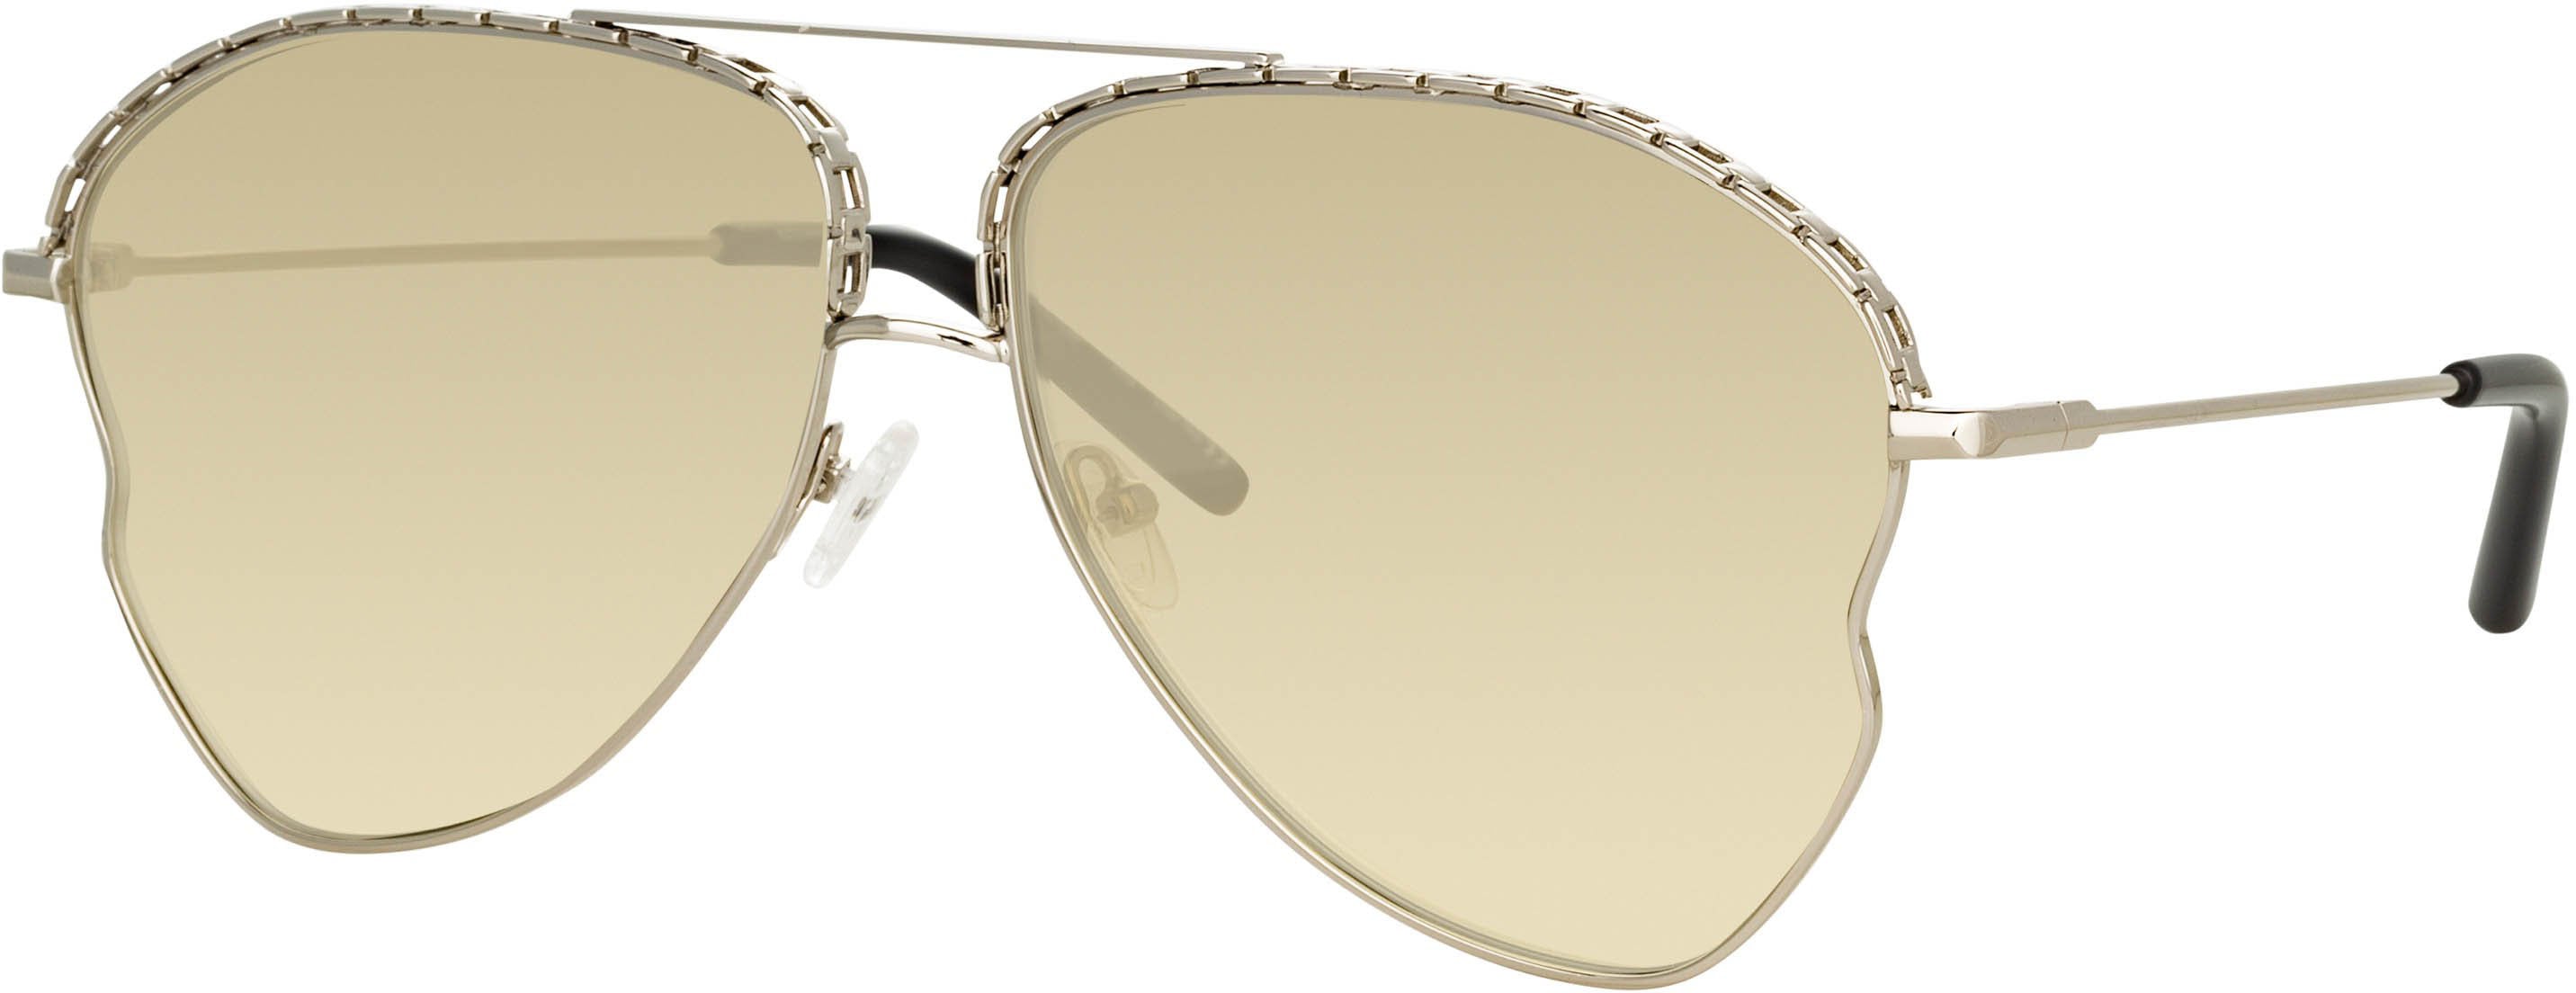 Color_MW272C5SUN - Matthew Williamson Lupin Sunglasses in Silver